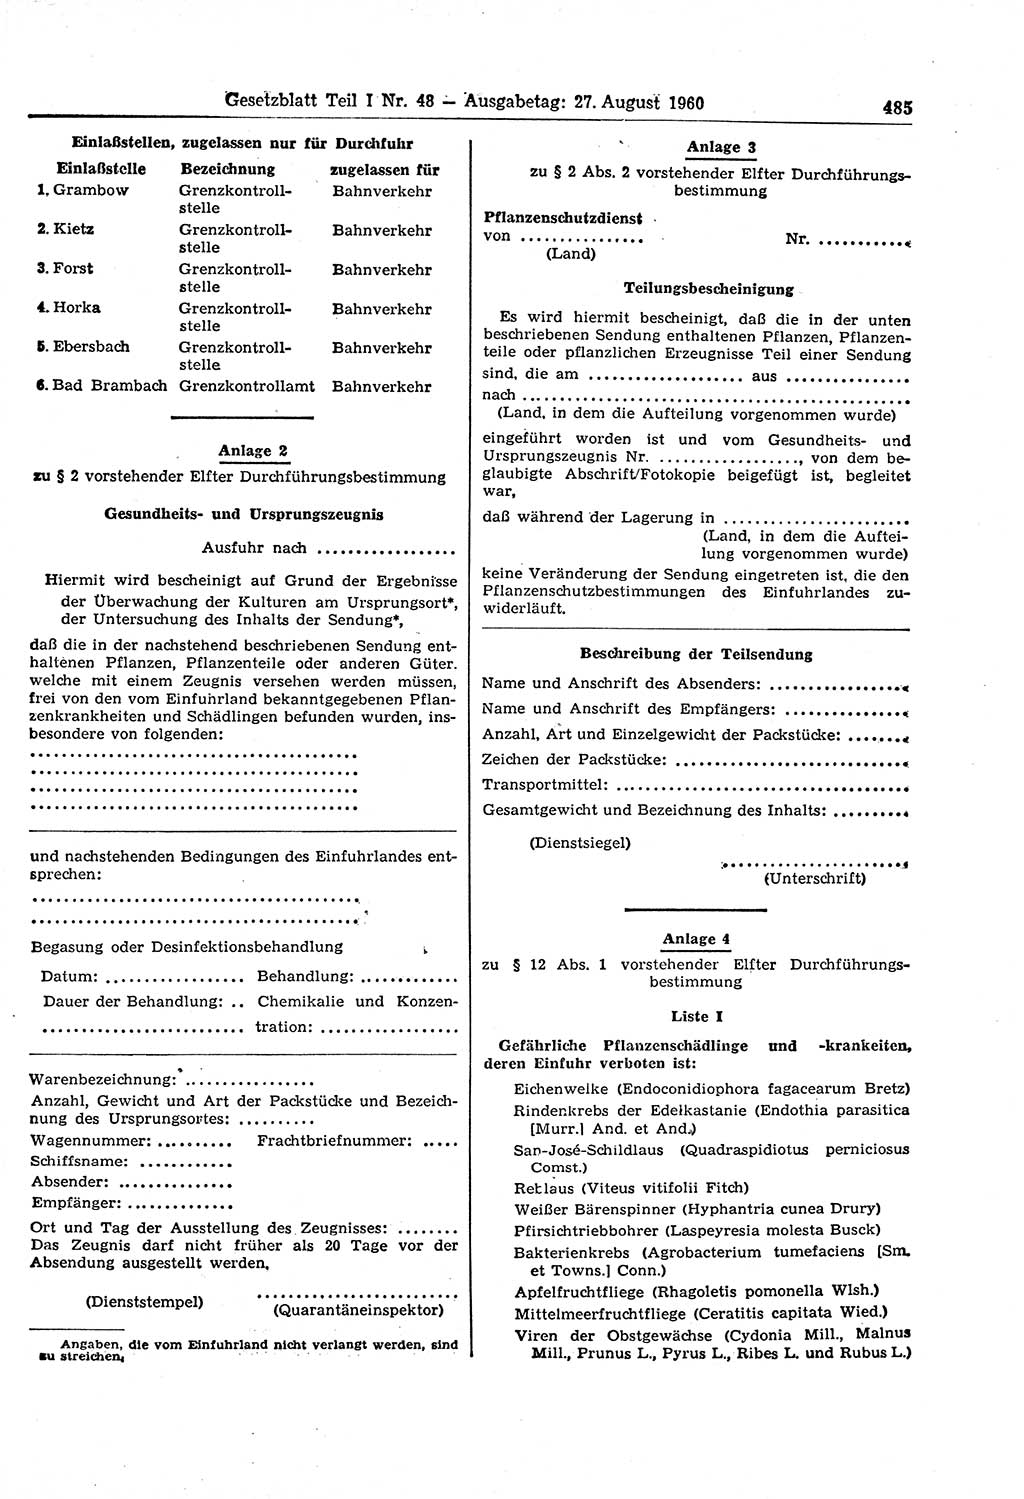 Gesetzblatt (GBl.) der Deutschen Demokratischen Republik (DDR) Teil Ⅰ 1960, Seite 485 (GBl. DDR Ⅰ 1960, S. 485)